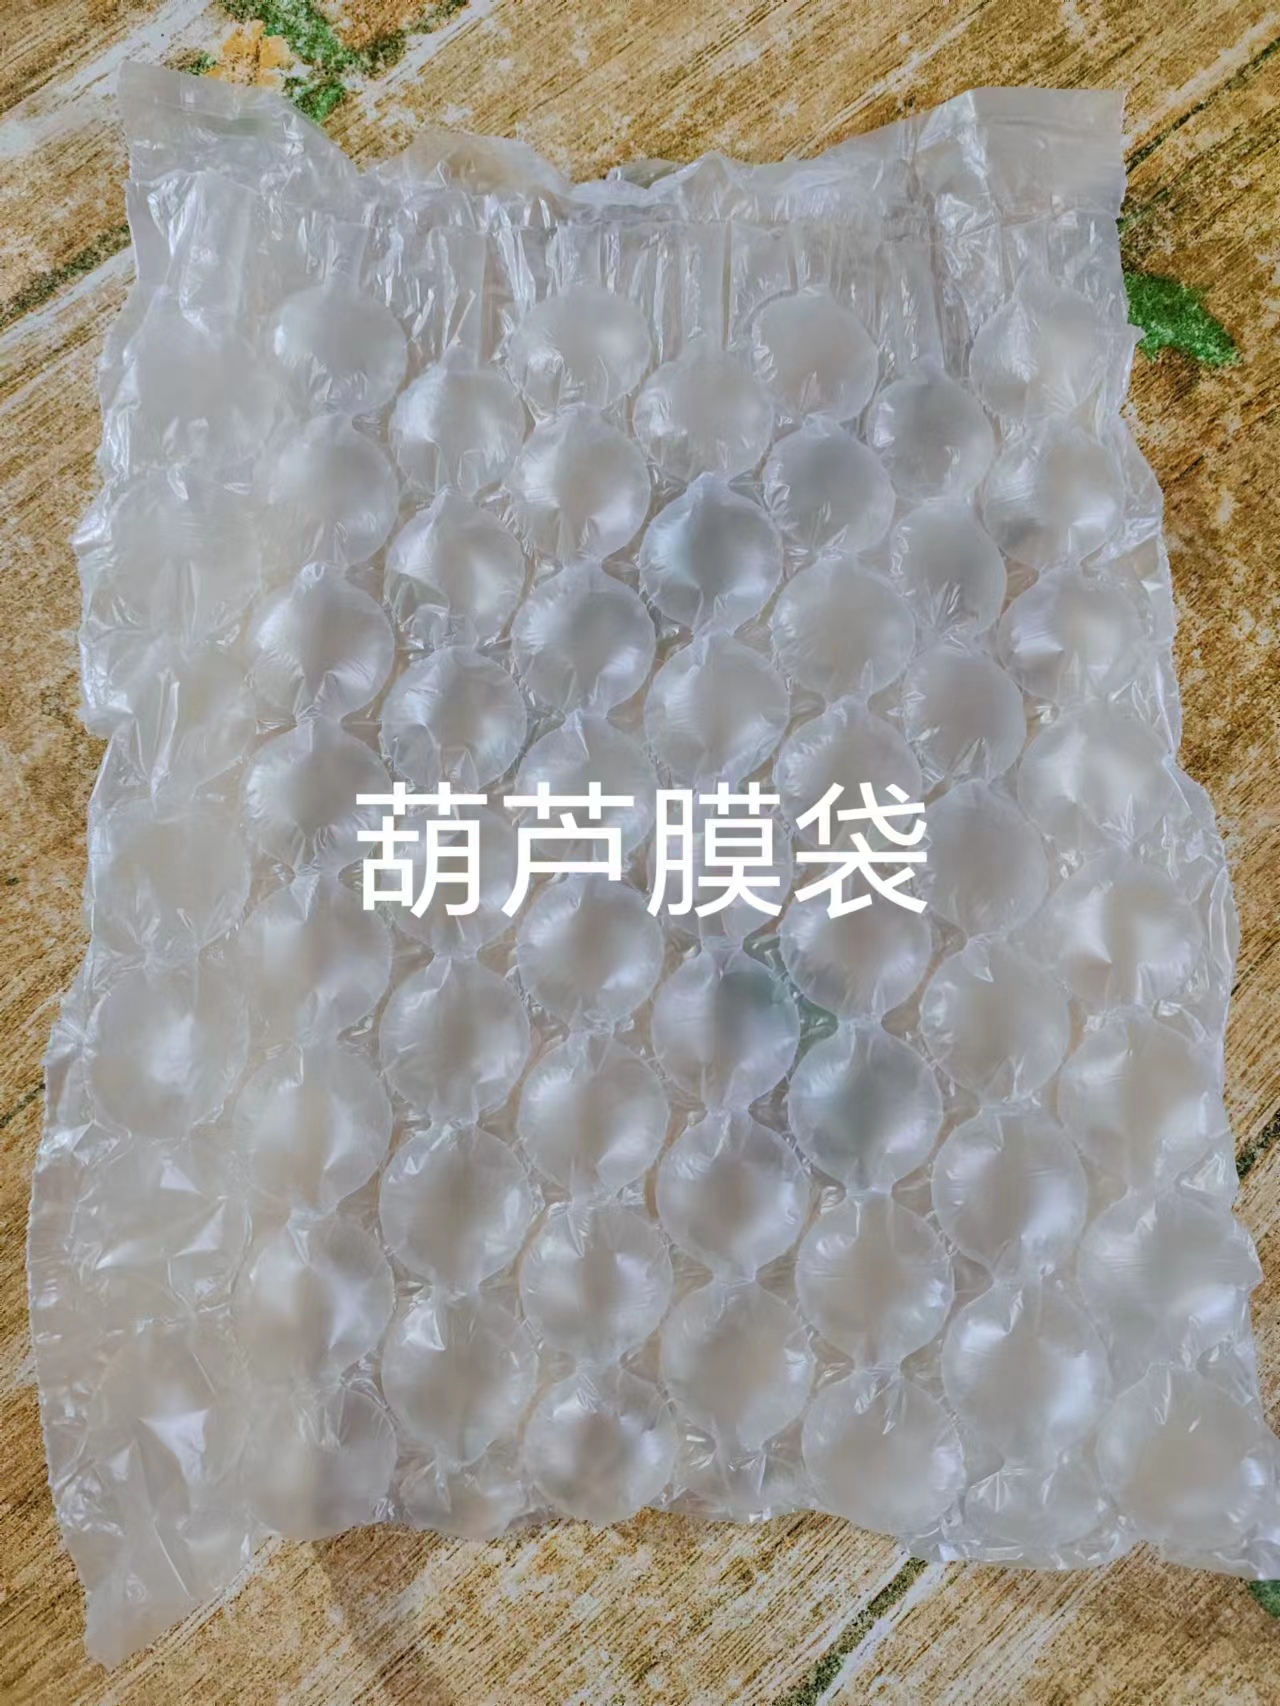 防震包装葫芦膜袋、哈尔滨葫芦膜袋生产厂家、葫芦膜气泡袋